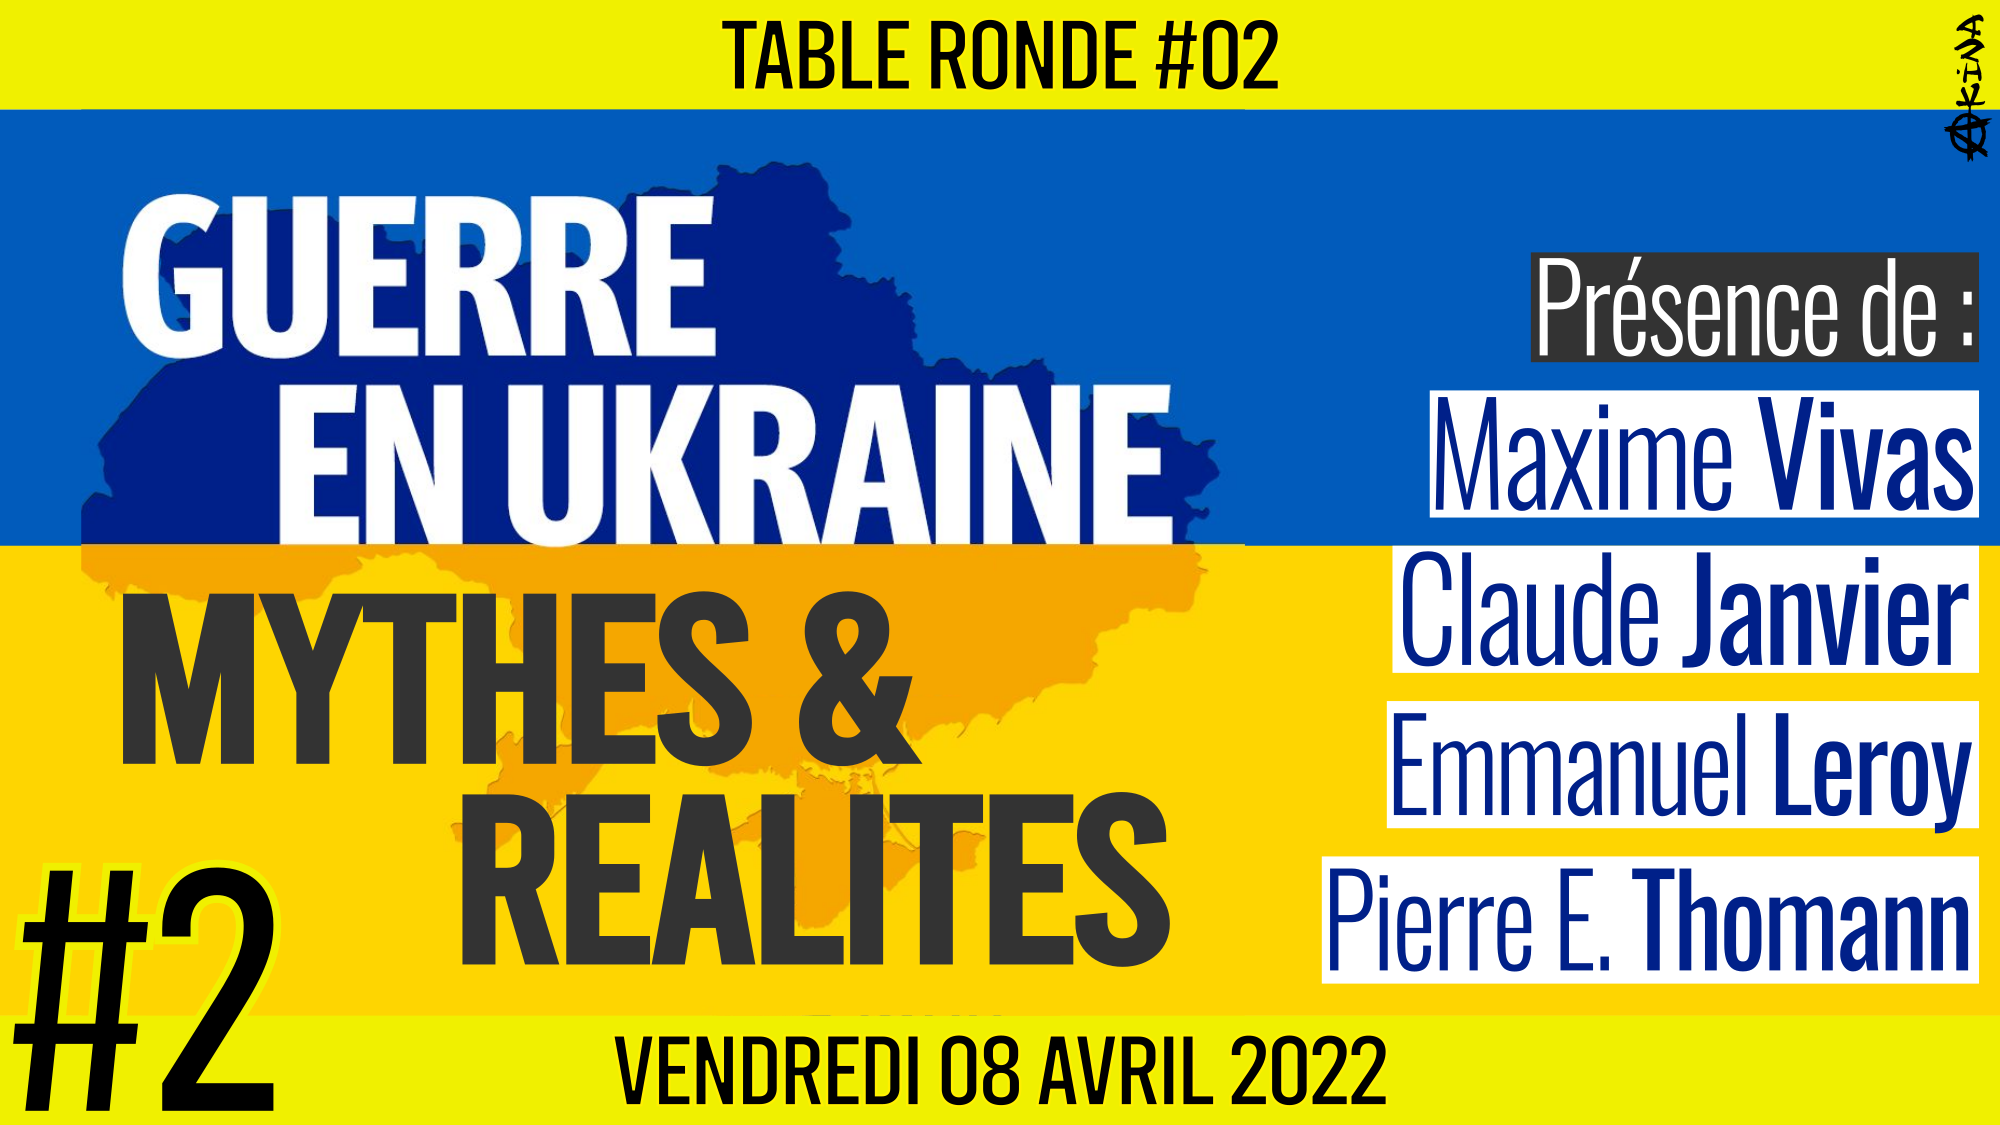 🎡 TABLE RONDE #02 👥 Maxime Vivas, Claude Janvier & Pierre-Emmanuel Thomann 🎯 Guerre en Ukraine : Mythes et réalités 📆 08-04-2022